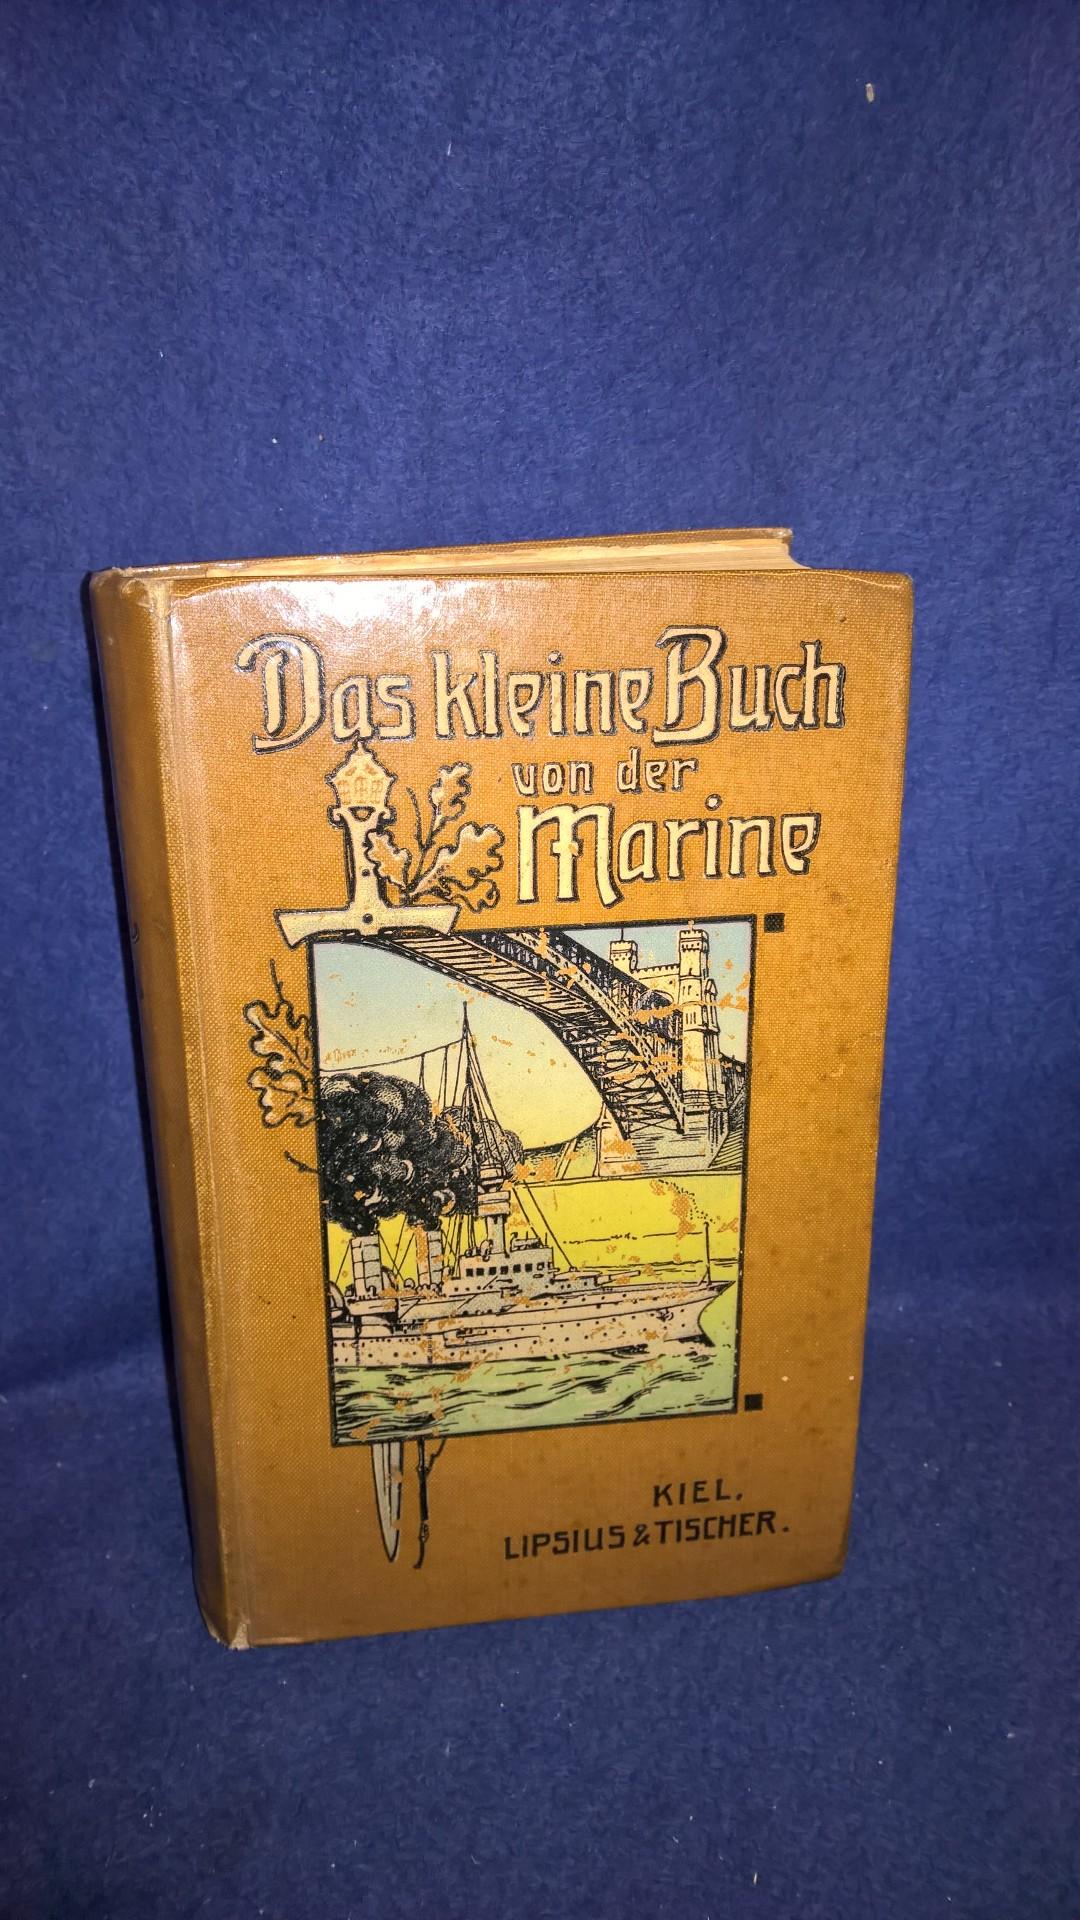 Das kleine Buch von der Marine, 1907 - Ein Handbuch allen Wissenswerten über die deutsche Flotte nebst vergleichender Darstellung der Seestreitkräfte des Auslandes.